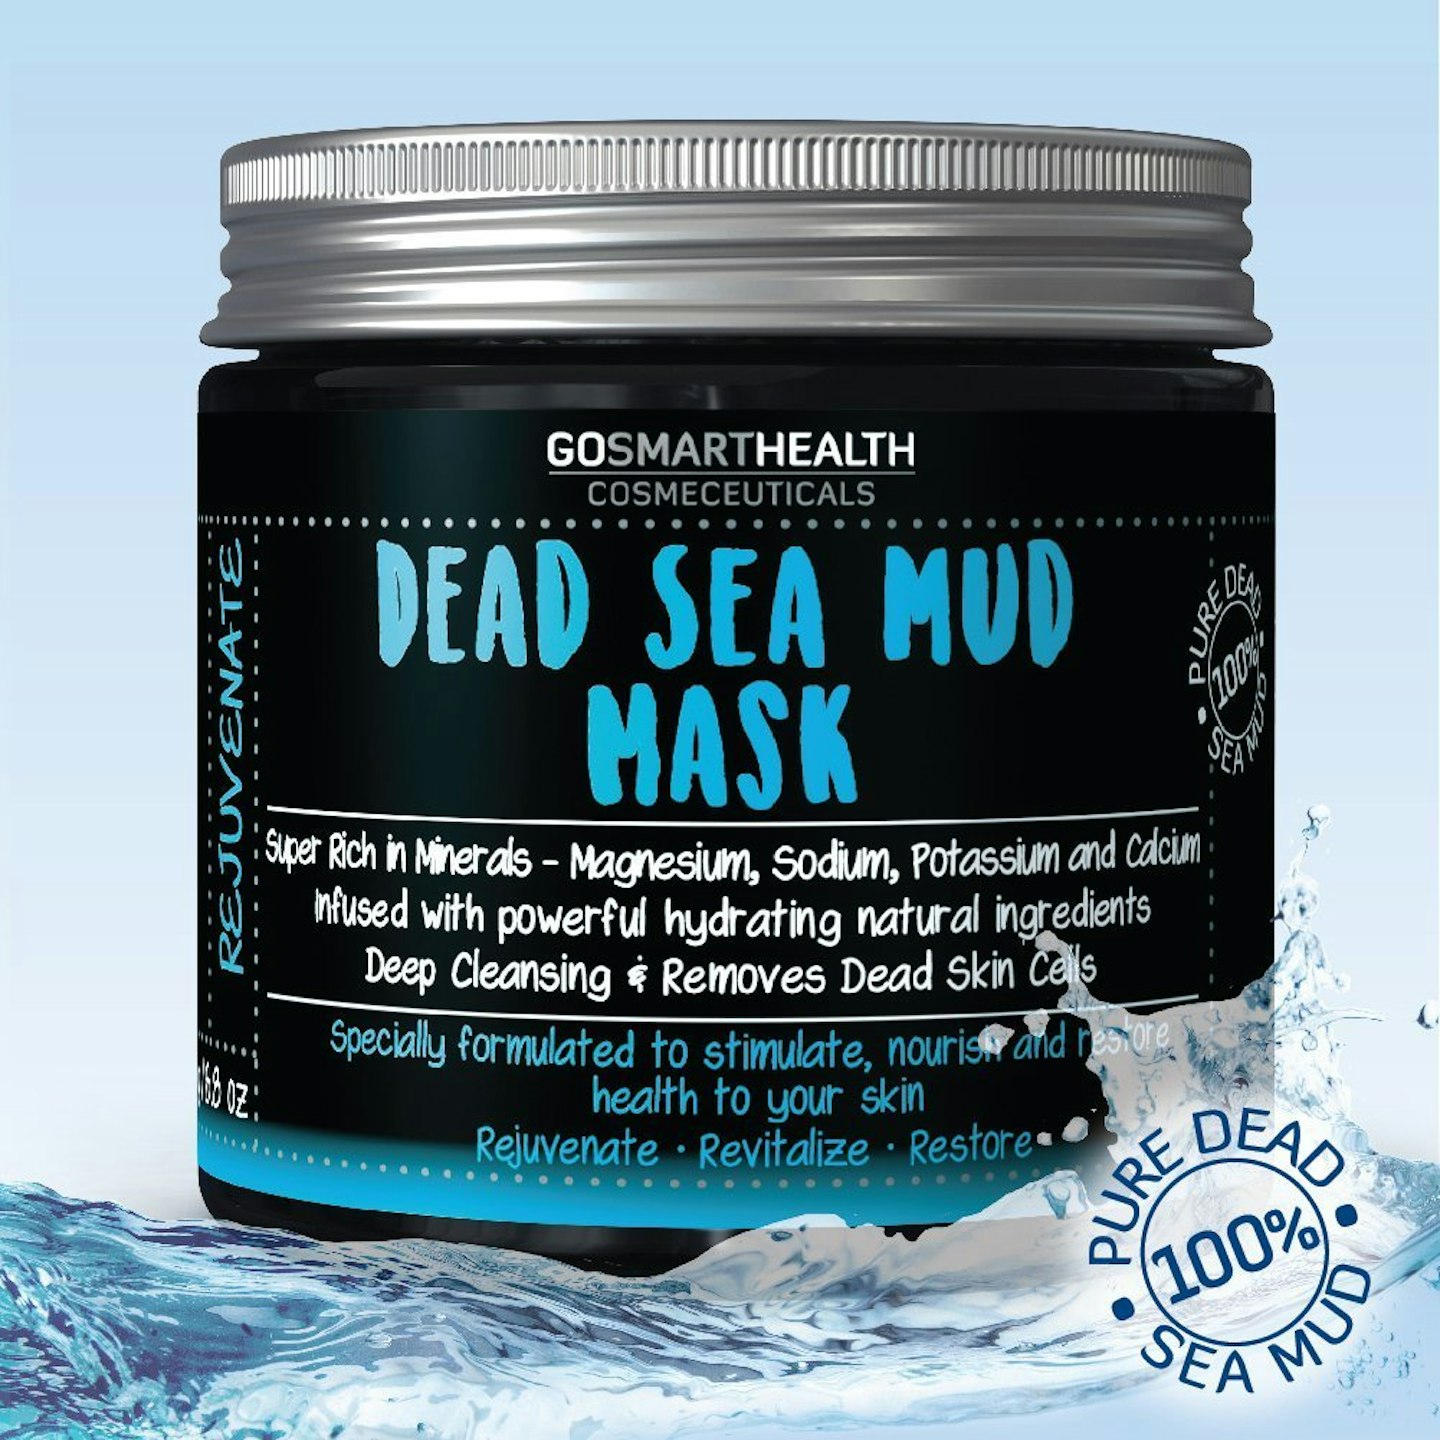 GoSmartHealth Dead Sea Mud Mask